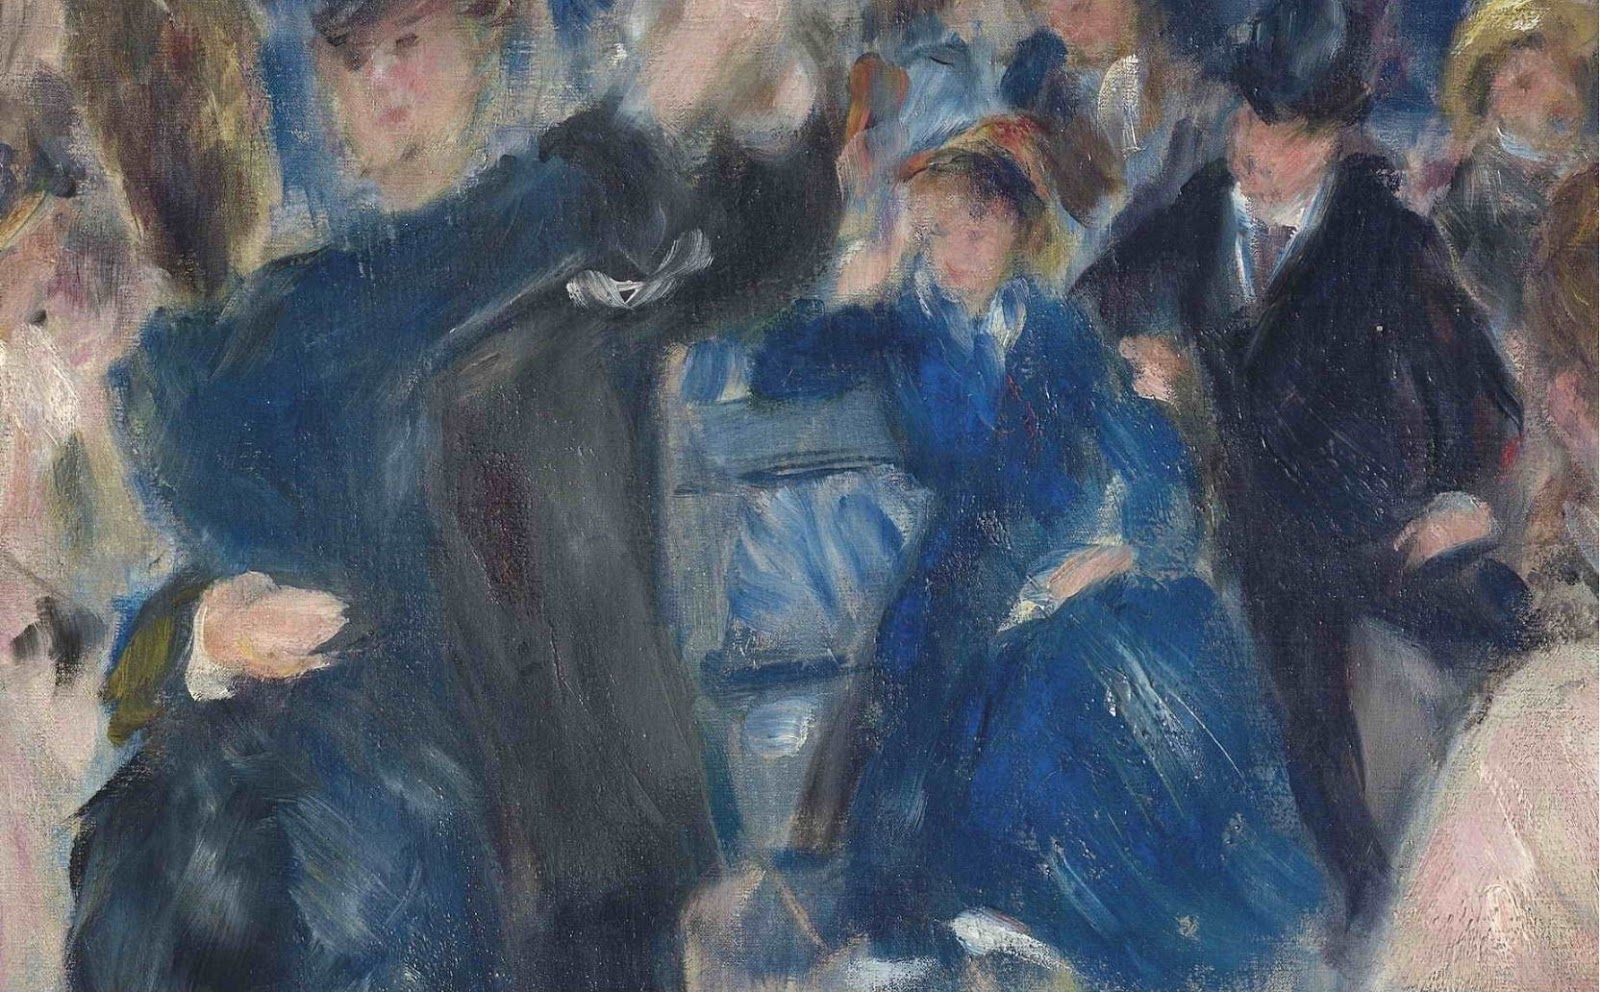 Pierre+Auguste+Renoir-1841-1-19 (431).JPG